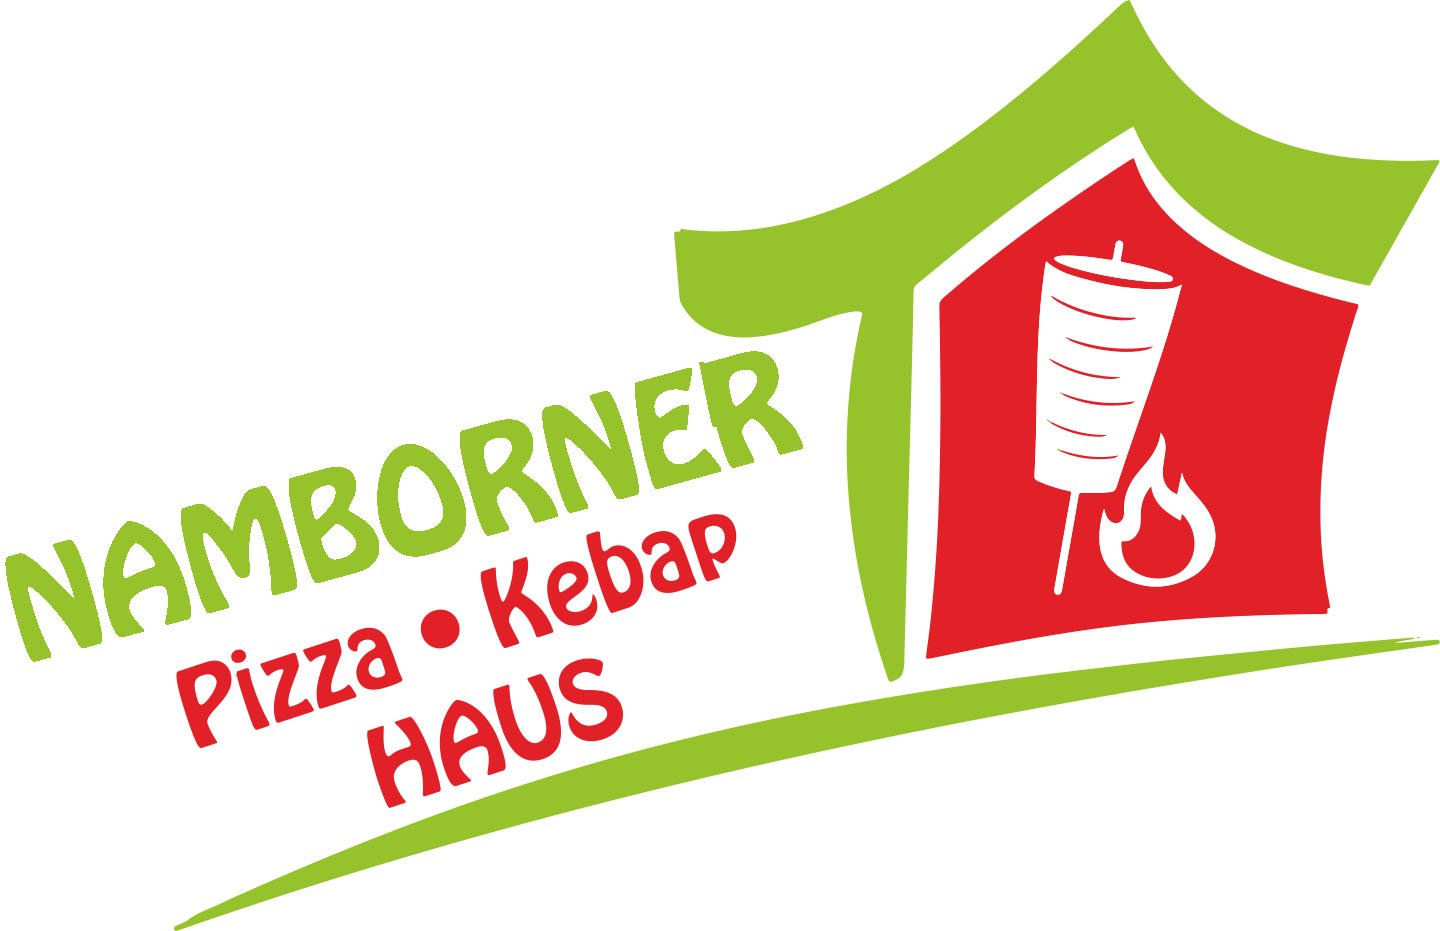 (c) Namborner-kebaphaus.de